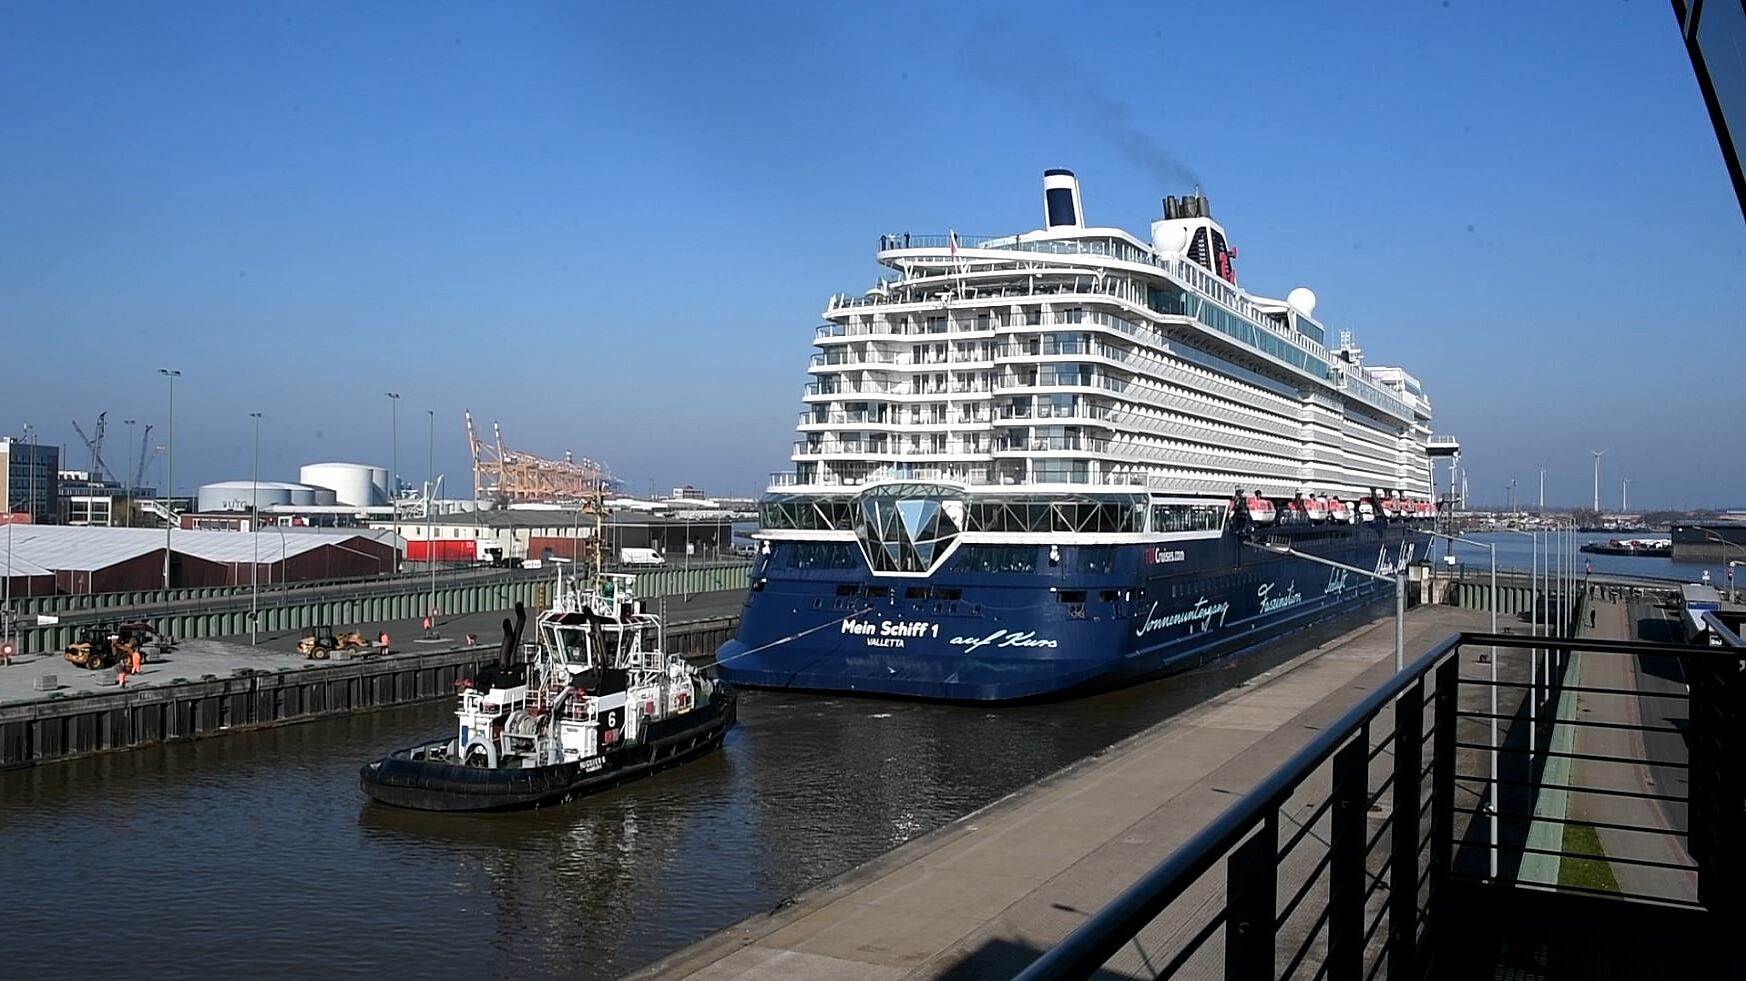 ‘Mein Schiff1’ ends its short stay in Kaiserhafen